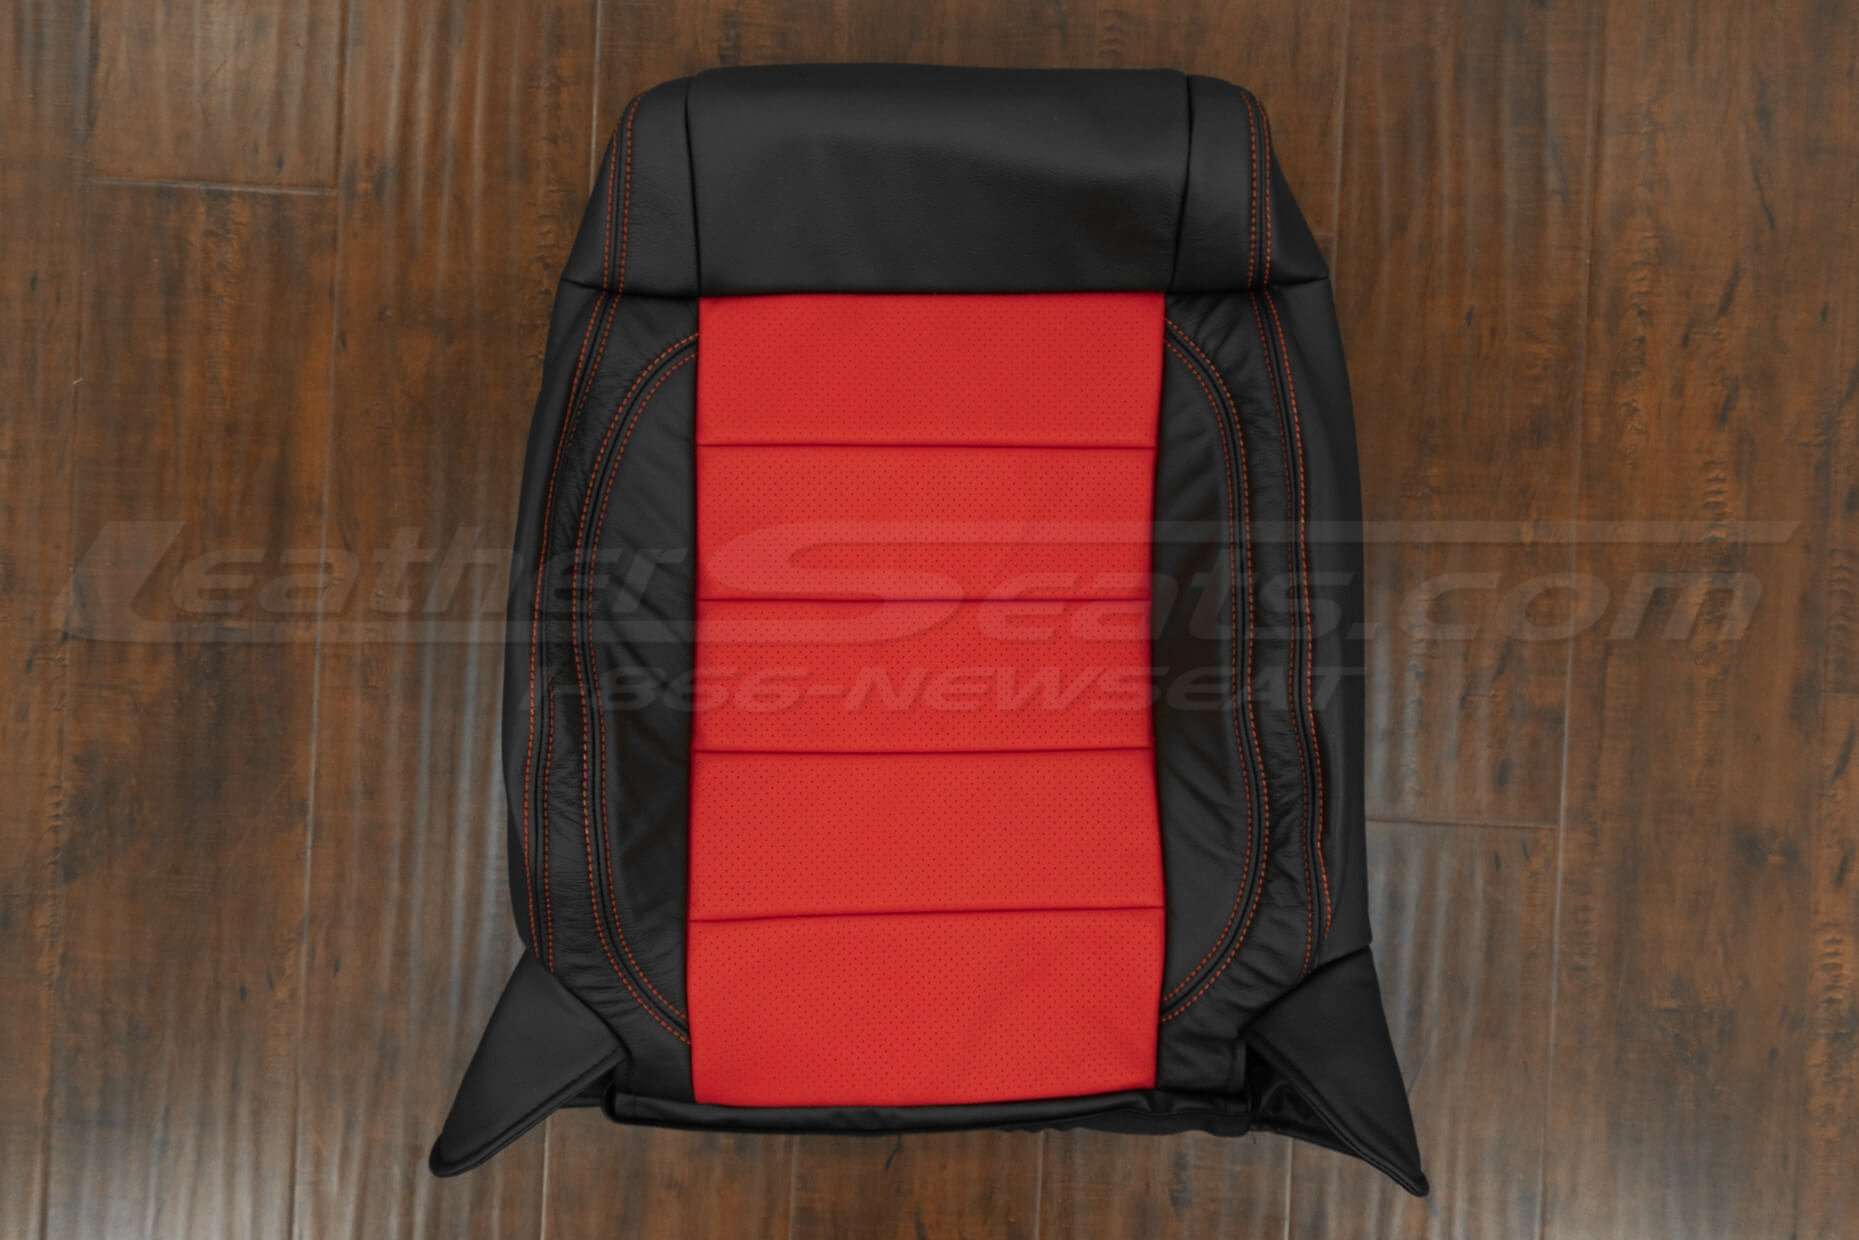 07-10 Jeep Wrangler Upholstery Kit - Black / Bright Red - Front backrest upholstery